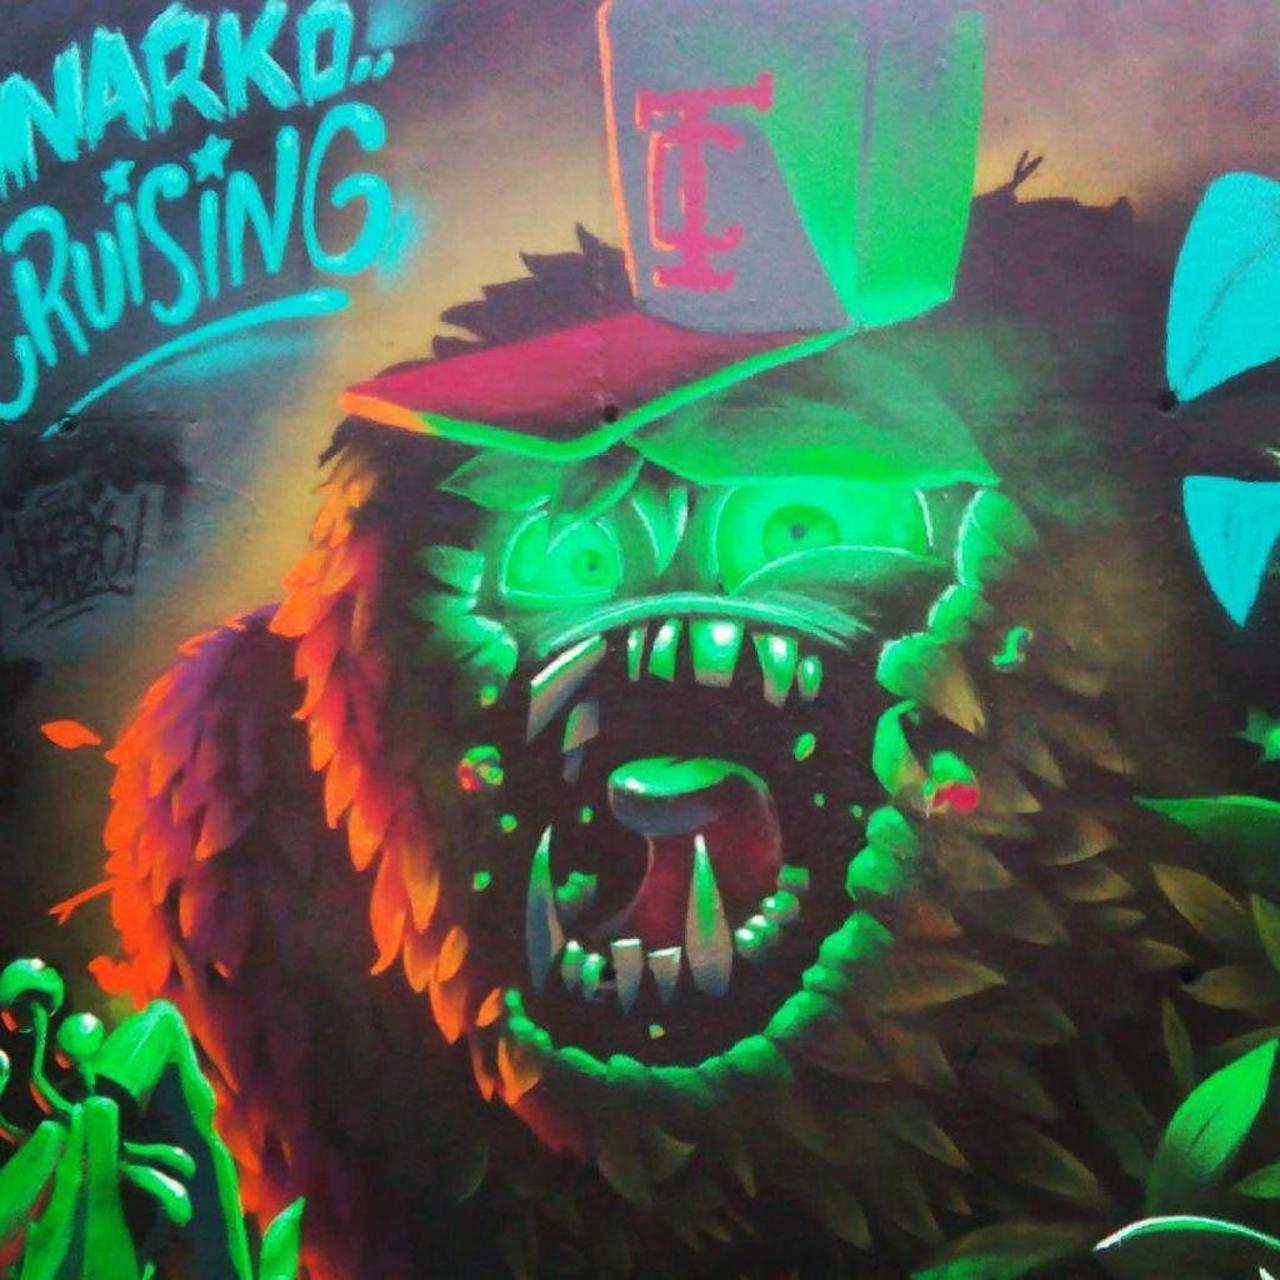 • DETAILS • by @harrybones #harrybones @saturnoart #saturnoart #narkocruising #narko #graffiti #painting #streetart… http://t.co/rB0C71THxg